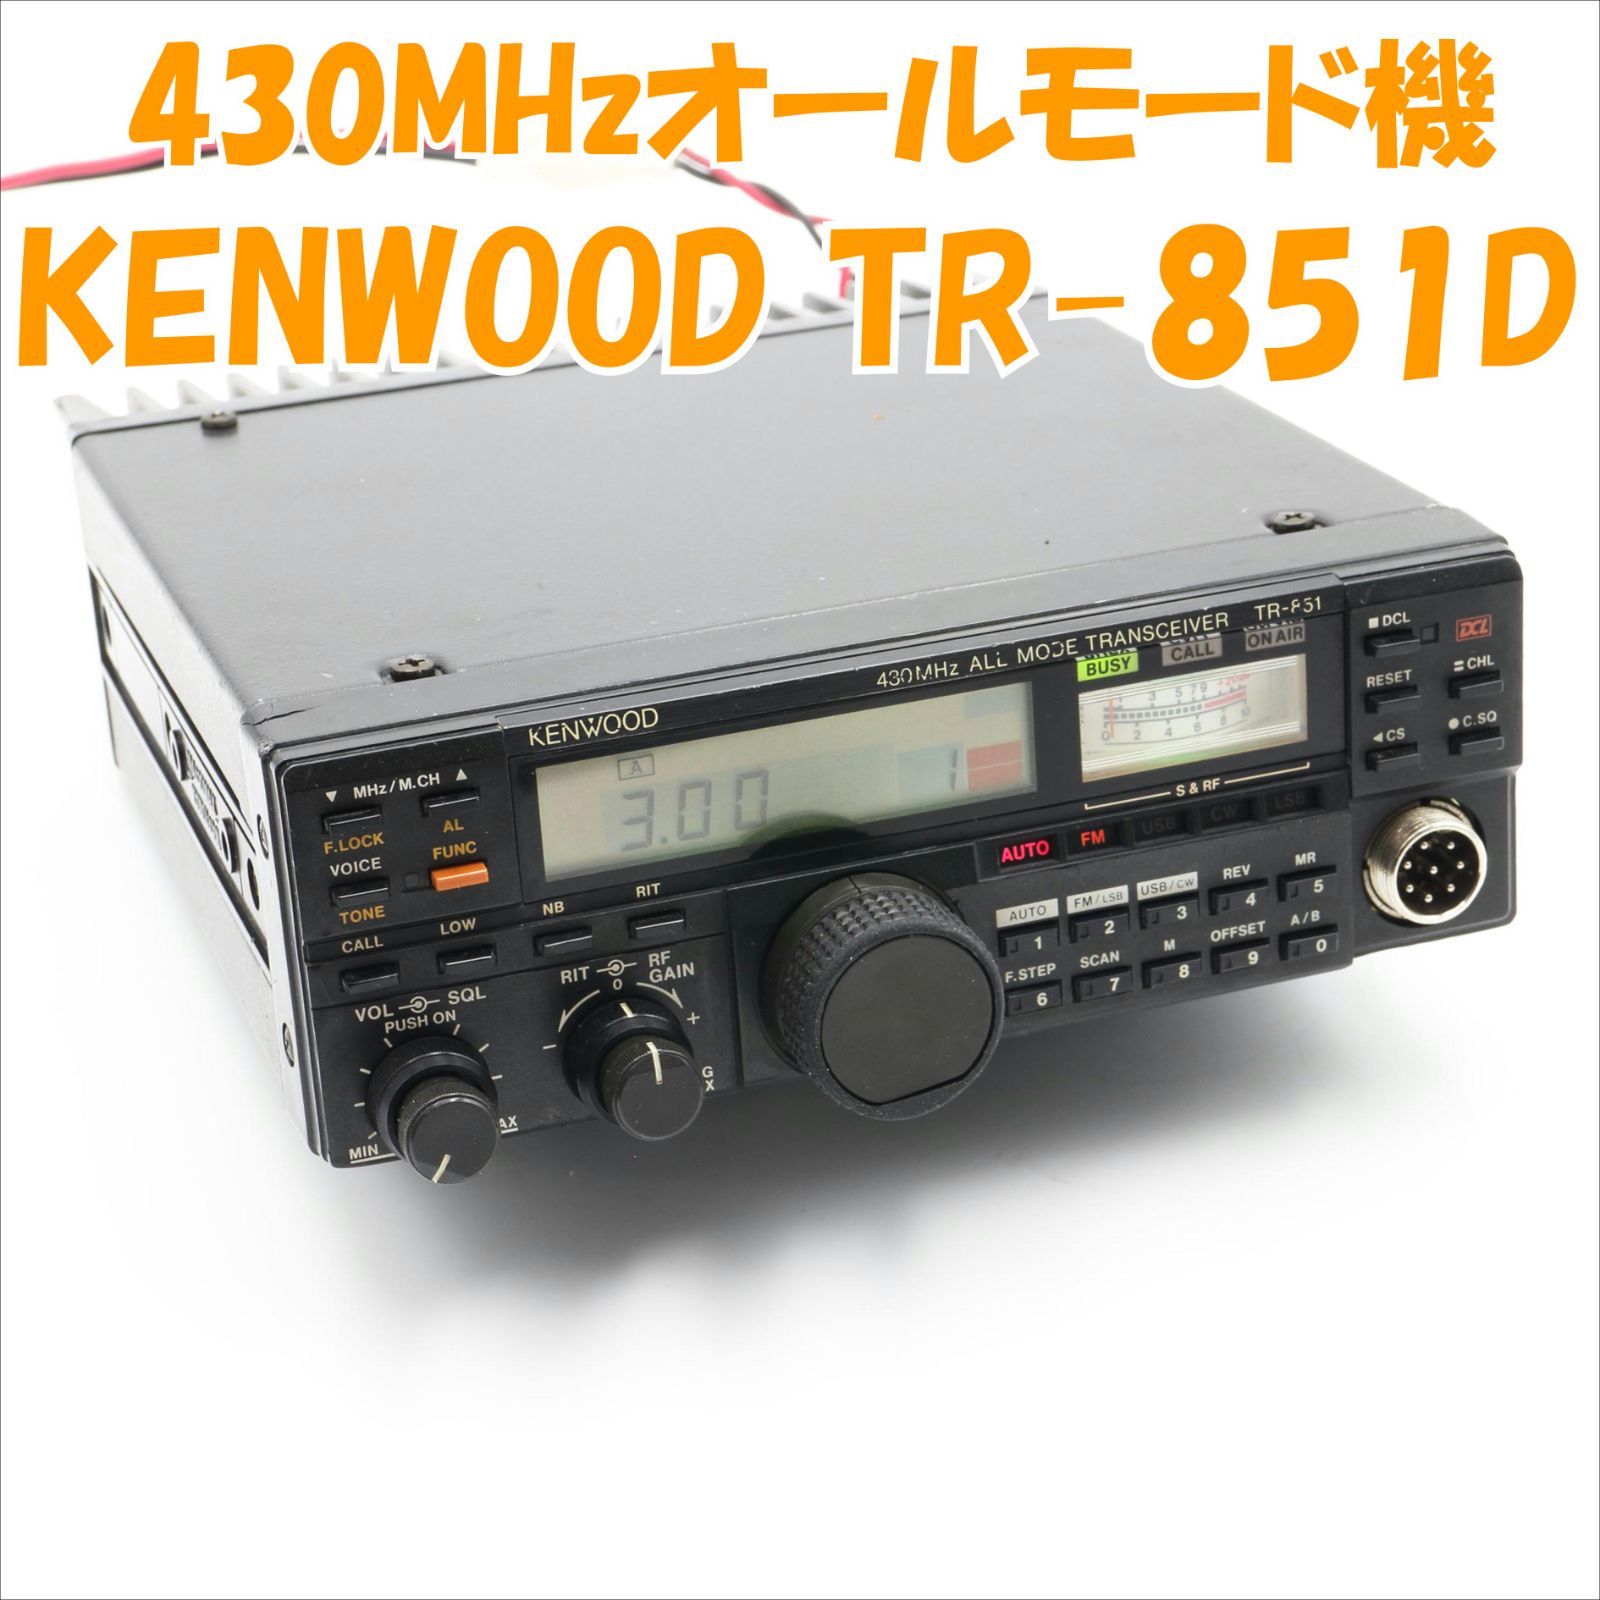 【得価セール】KENWOOD ケンウッド 430MHz オールモード トランシーバー TM-455 10W モービル